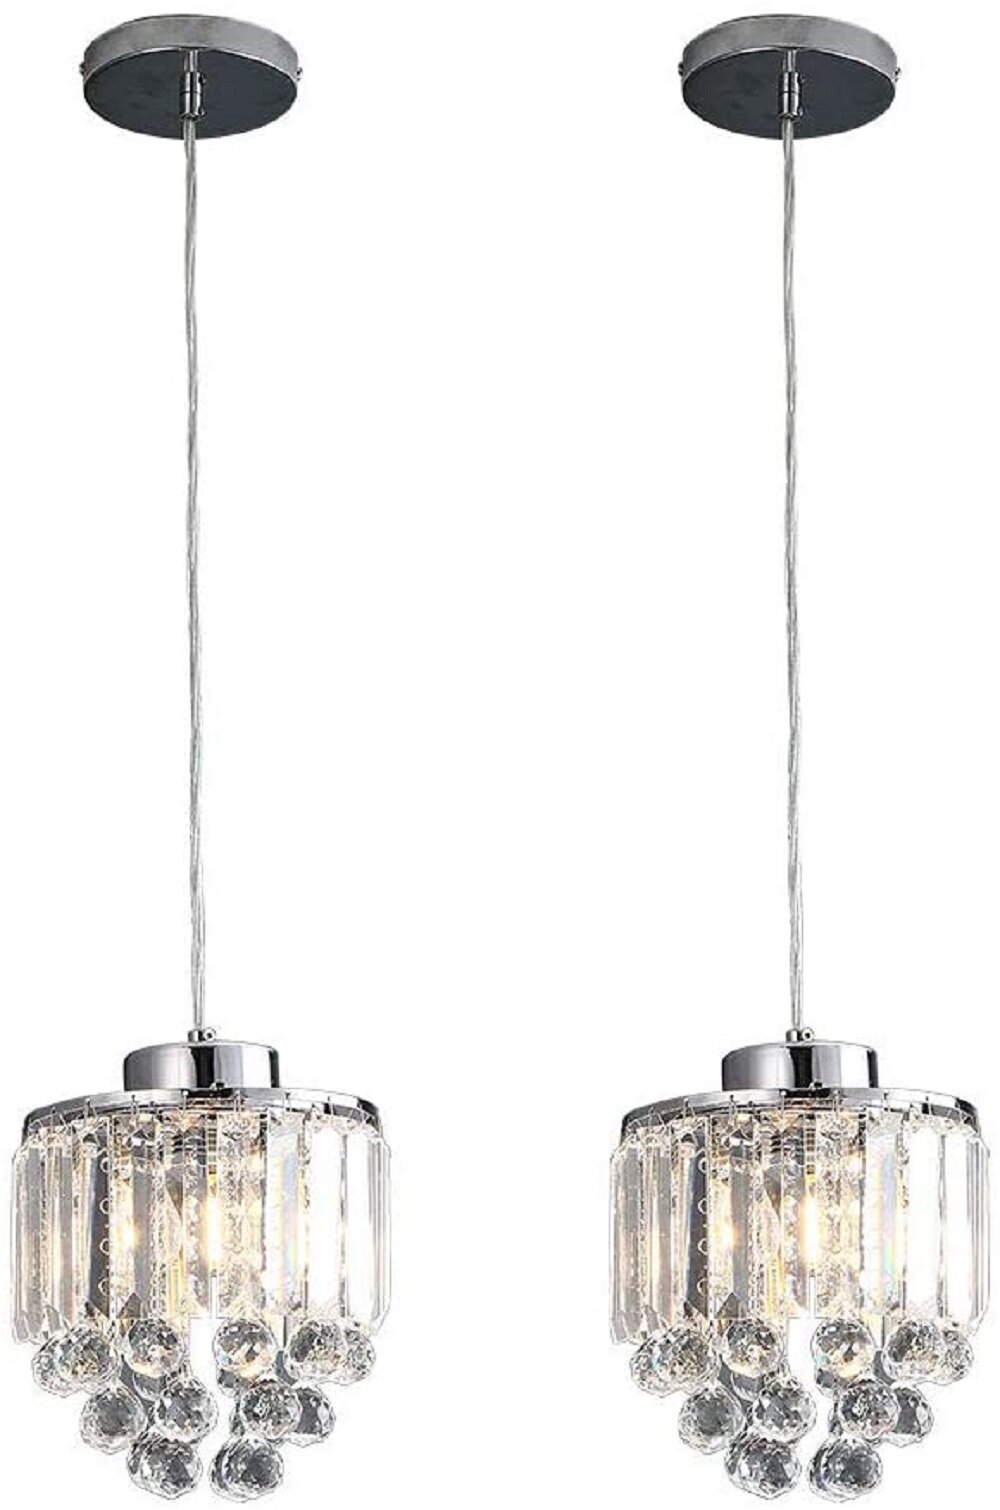 COTULIN Set of 3 Polished Decorative Crystal Pendant Light,Chandelier for Kitchen Island Dining Room Living Room Bar 